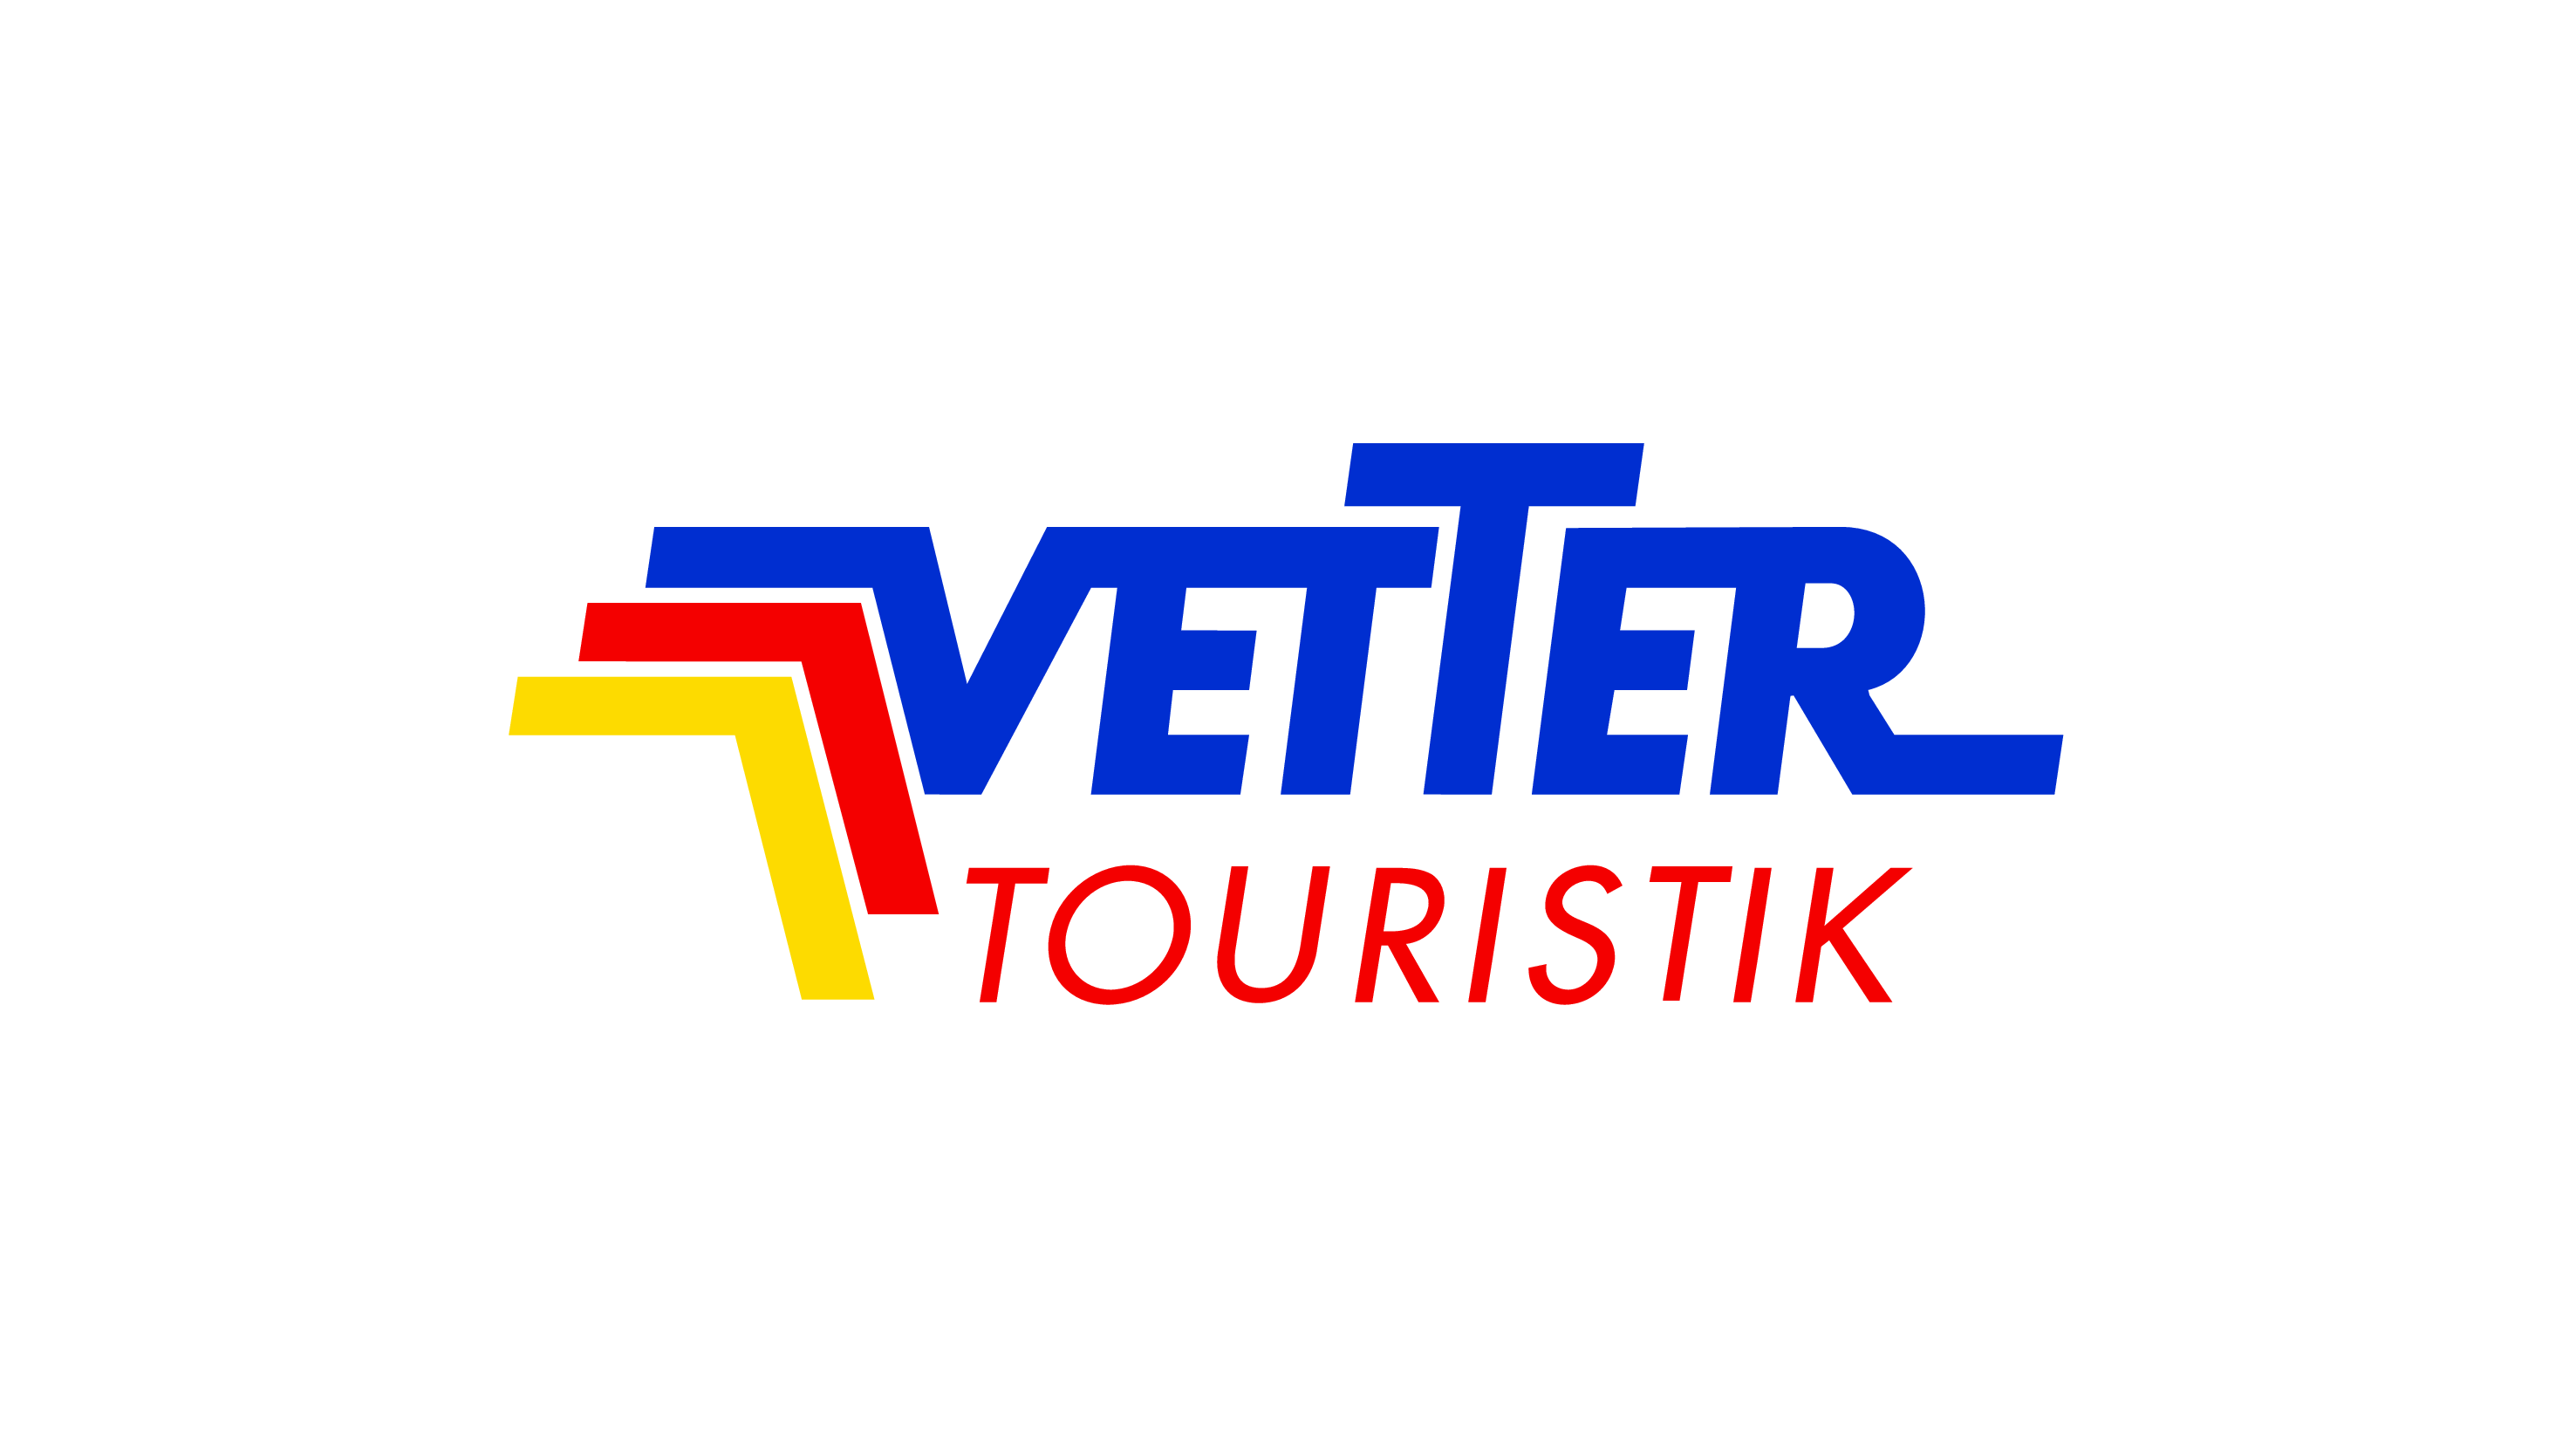 Logo Vetter-Touristik